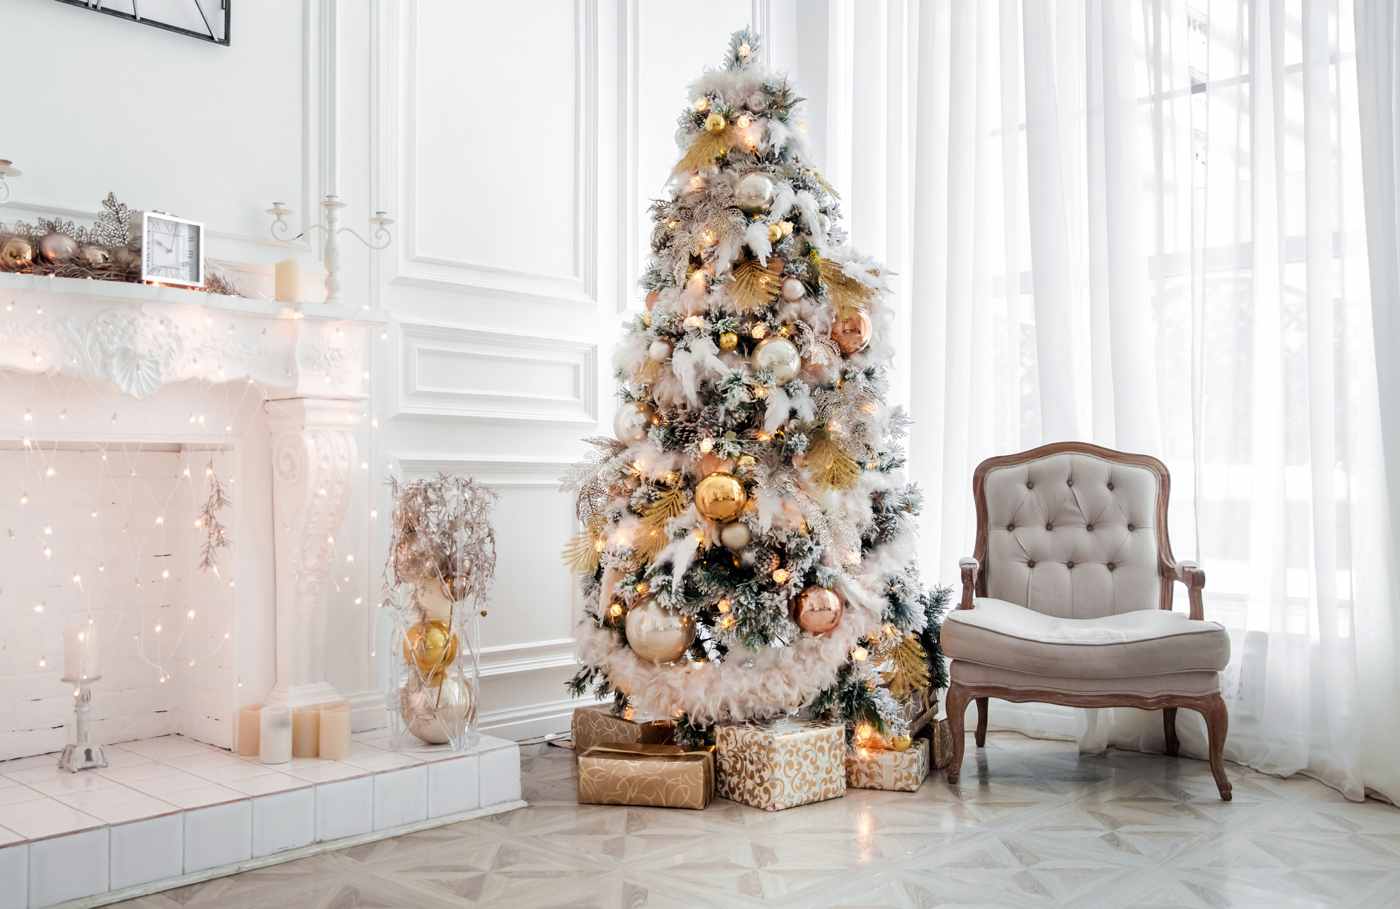 Weihnachtsbaum weiß gold geschmückt festliche Weihnachtsdeko mit Lichterketten und Goldkugeln Christbaum neben dem Kamin